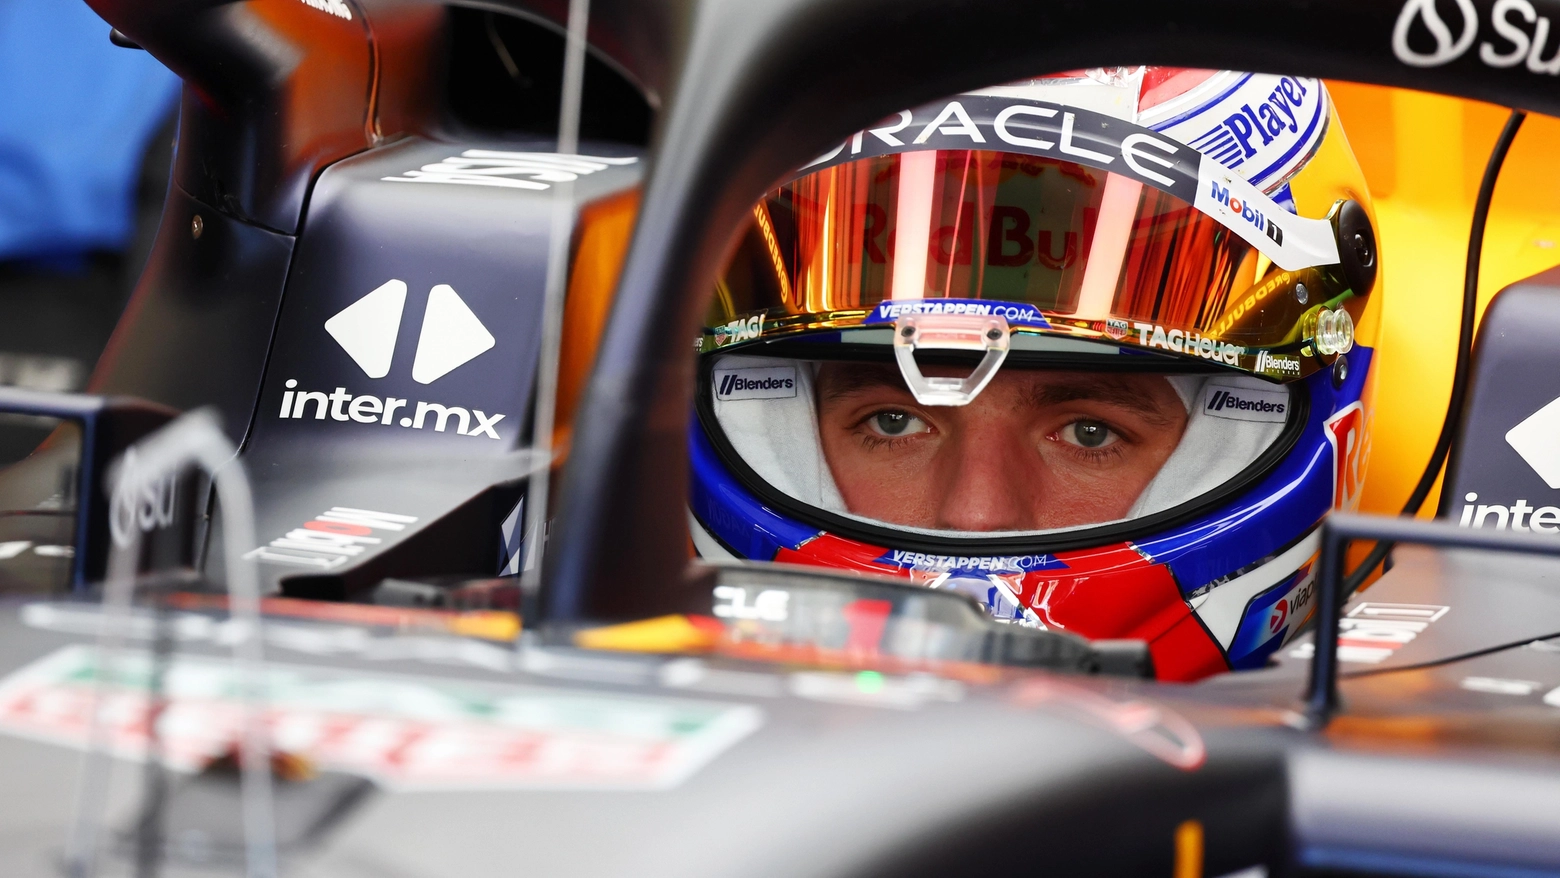 A Sakhir l’olandese della Red Bull sigla il miglior tempo della prima giornata. Leclerc, in pista nella sessione del mattino, chiude con il settimo tempo